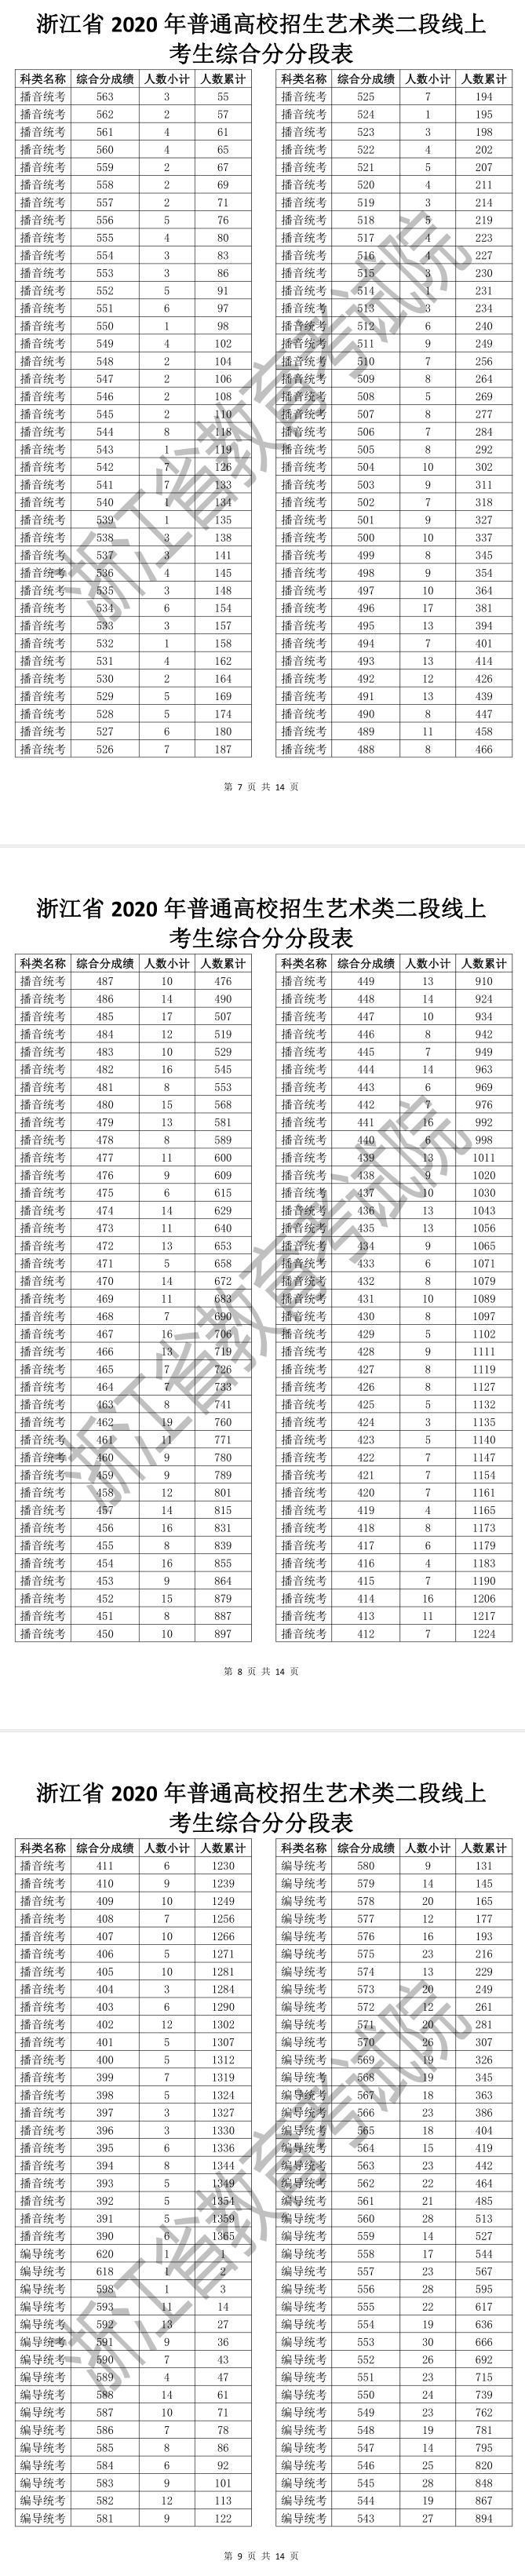    浙江省2020年普通高校招生艺术类二段线上考生综合分分段表